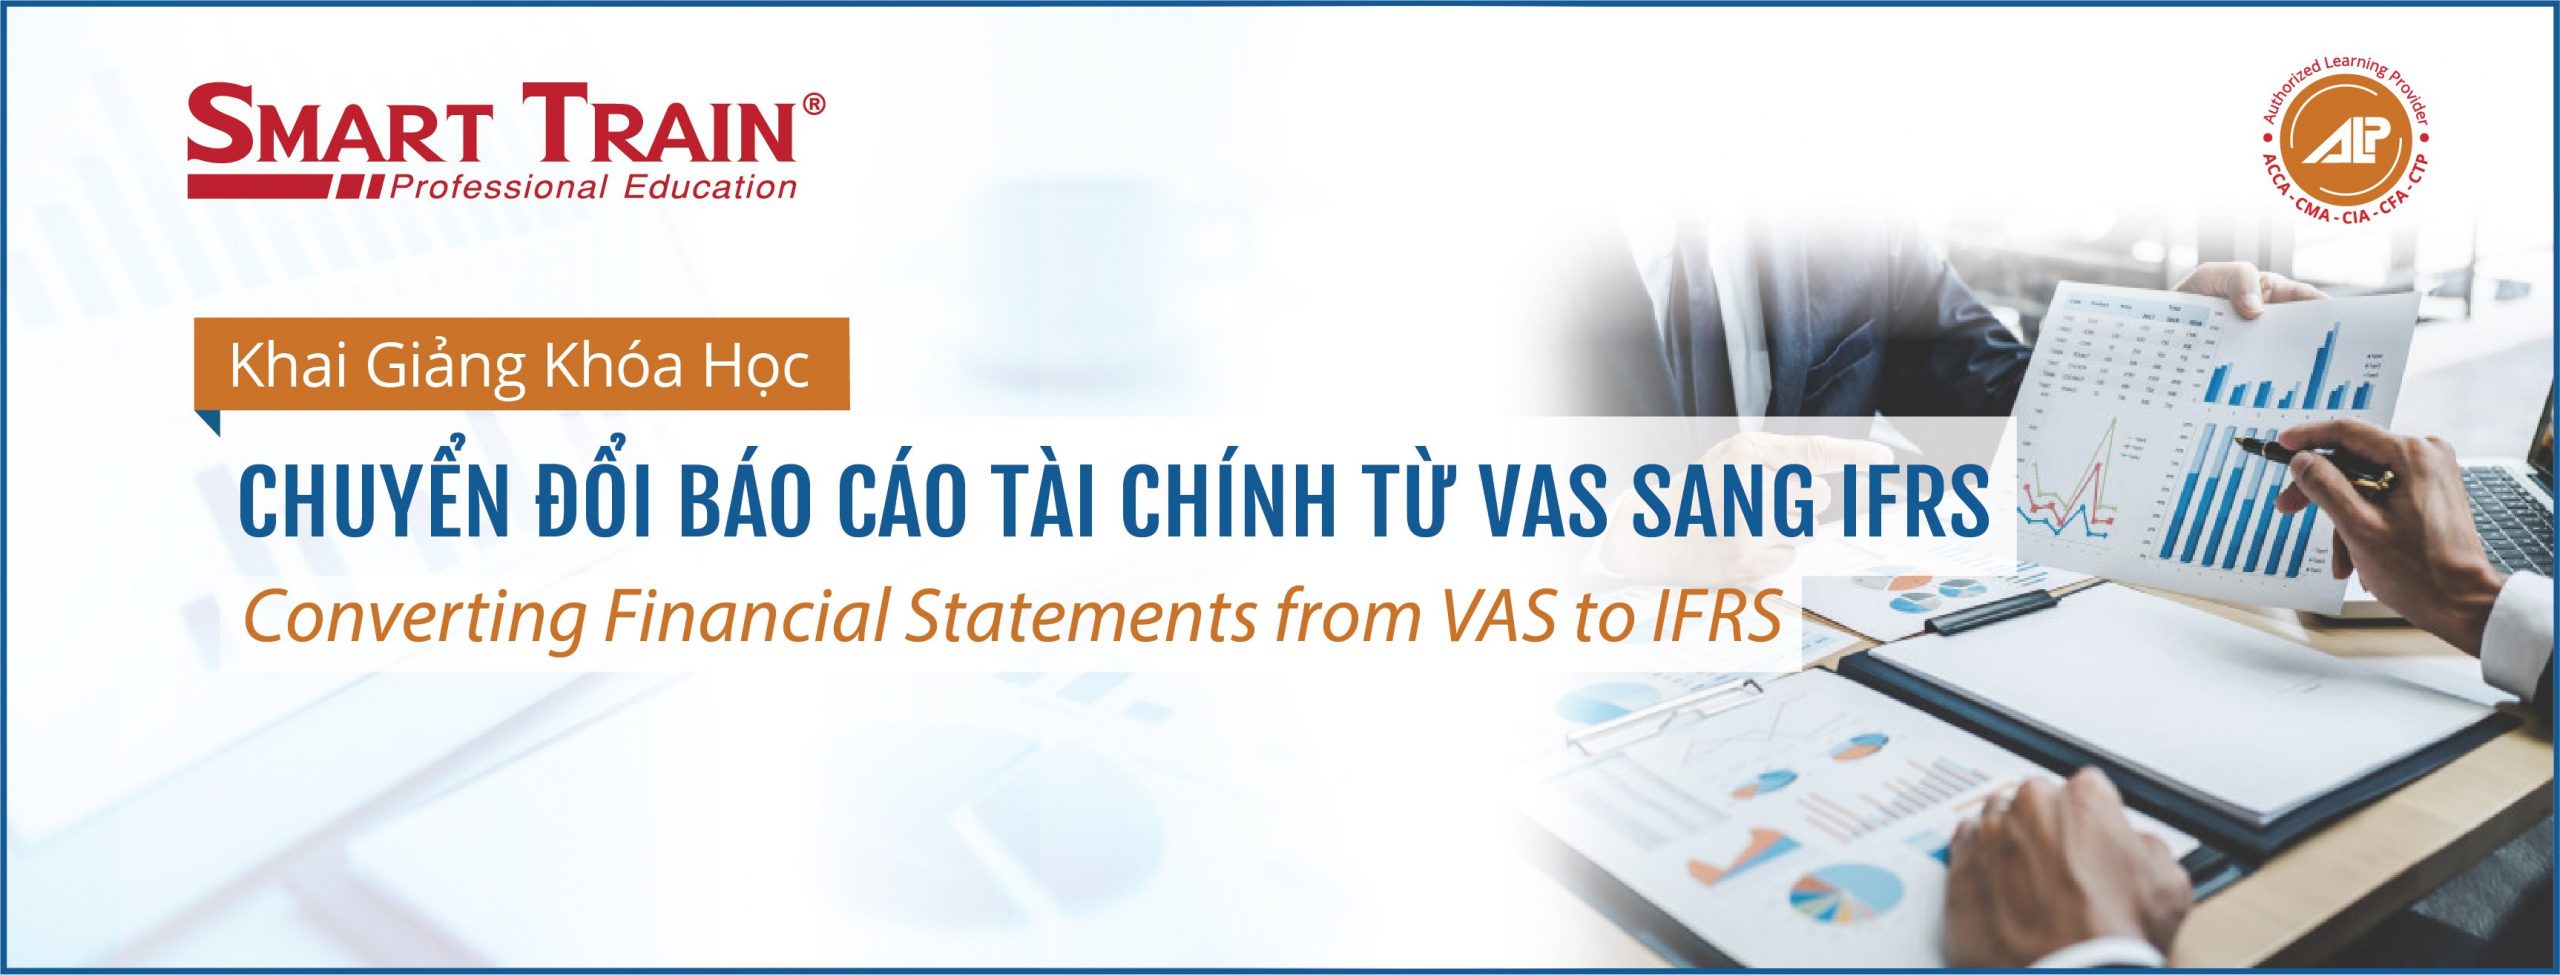 chuyển đổi báo cáo tài chính từ VAS sang IFRS